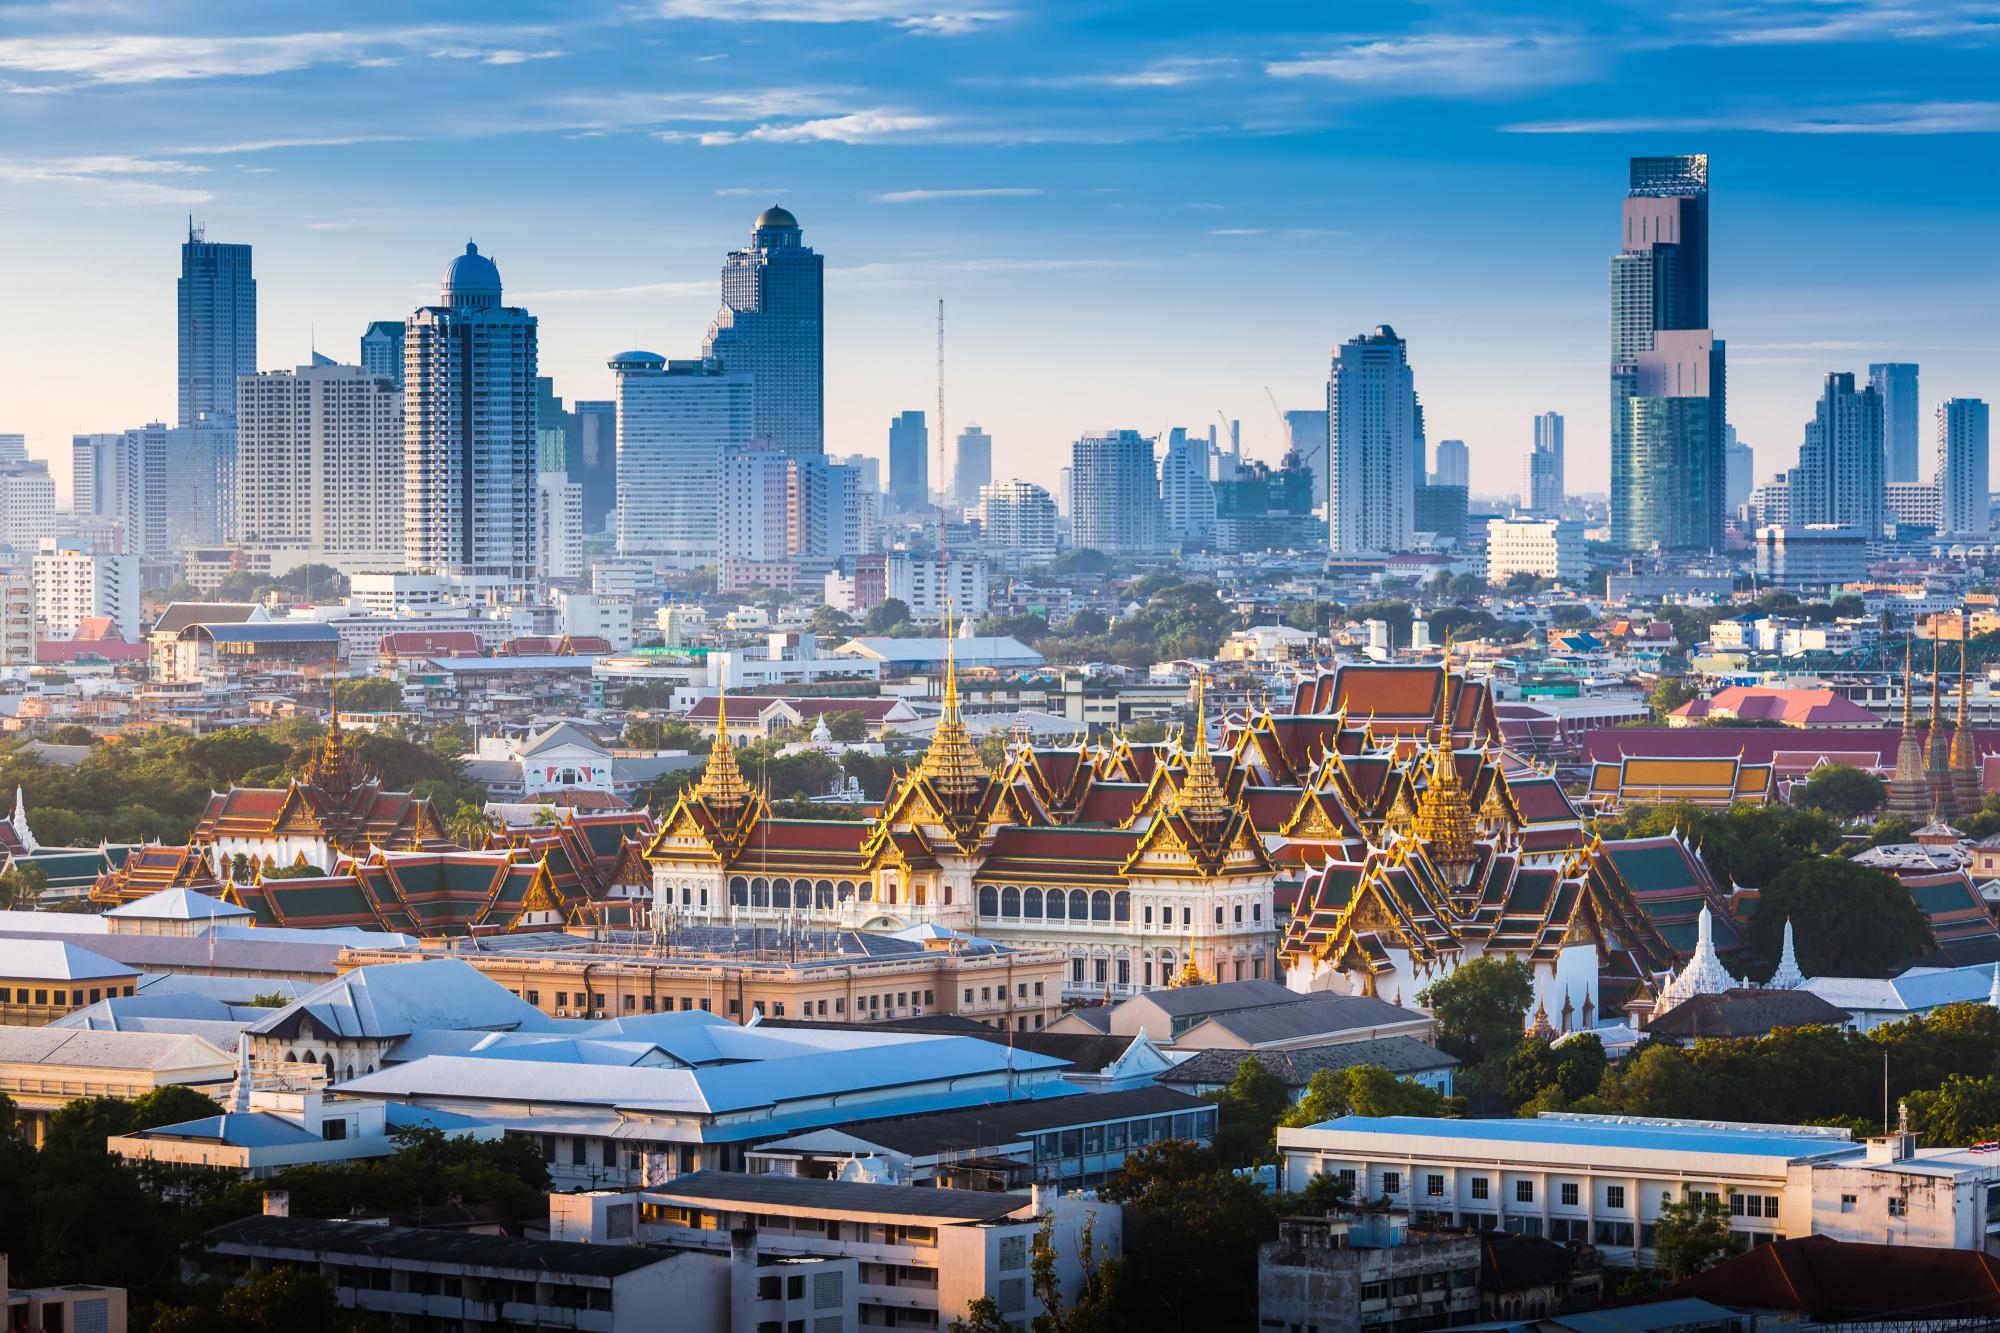 Tour du lịch Bangkok - Pattaya (Khách sạn 4*) - KH HCM 